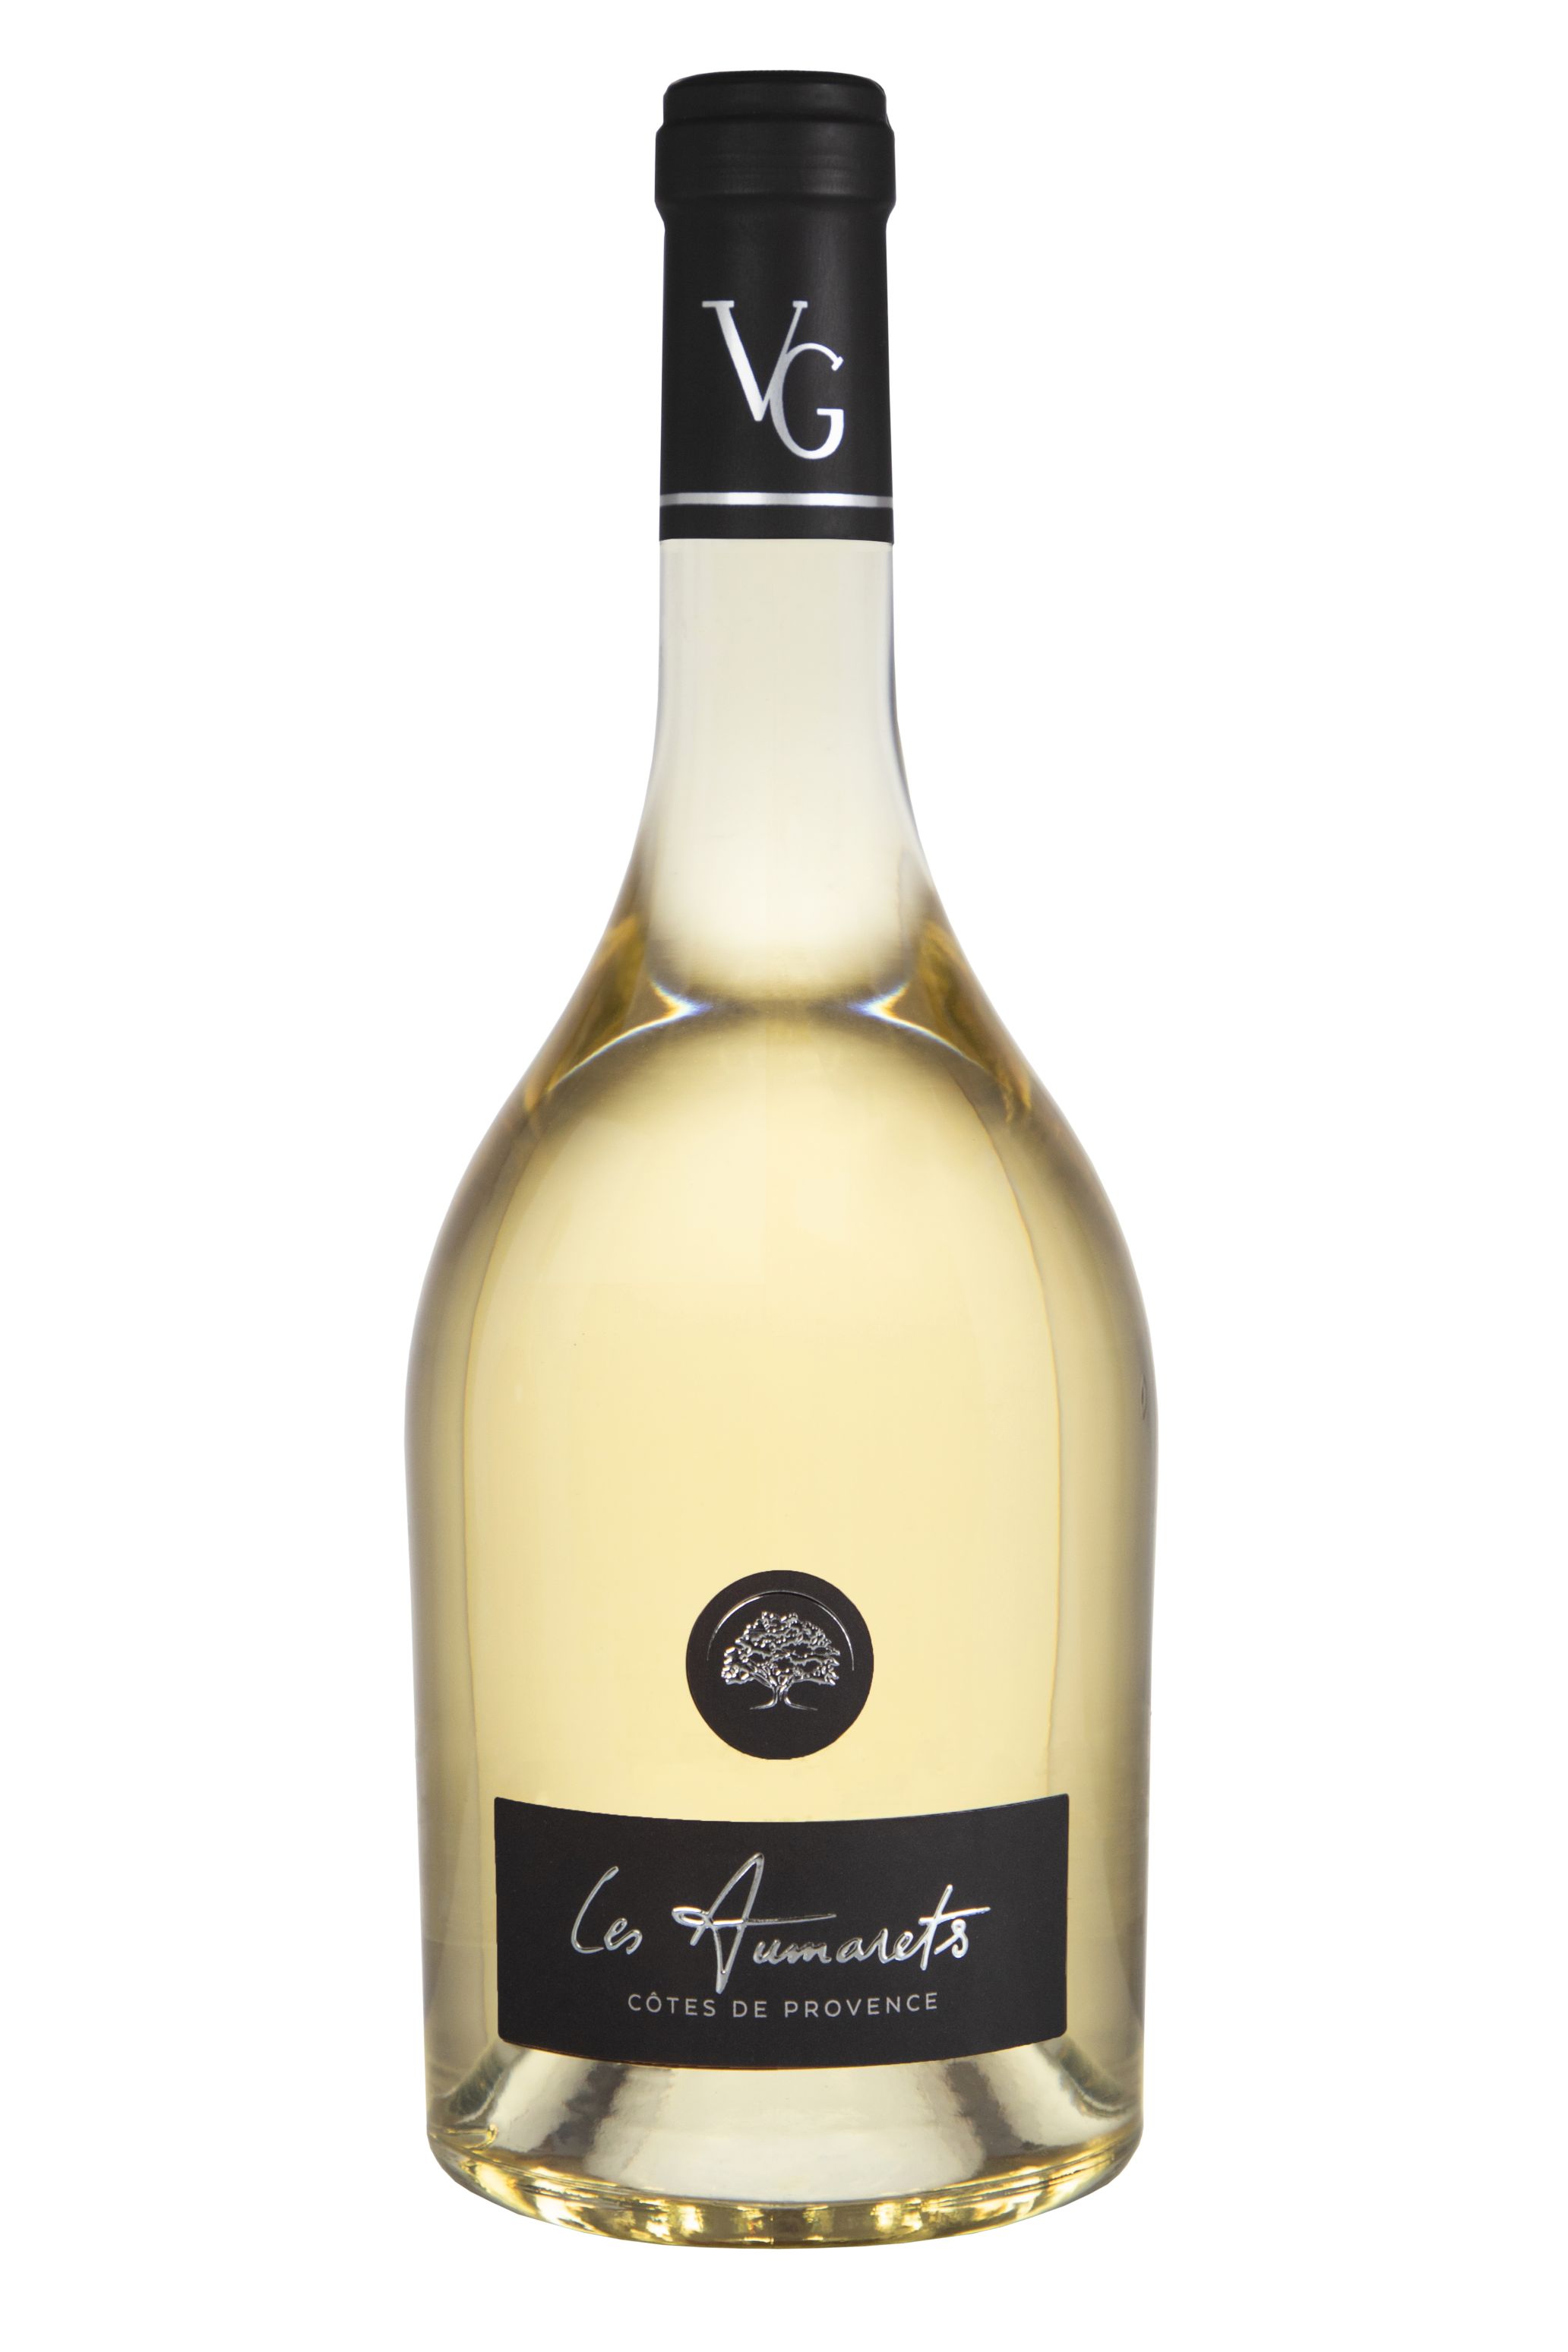 Bouteille Les Aumarets Blanc, vin AOP Côtes de Provence